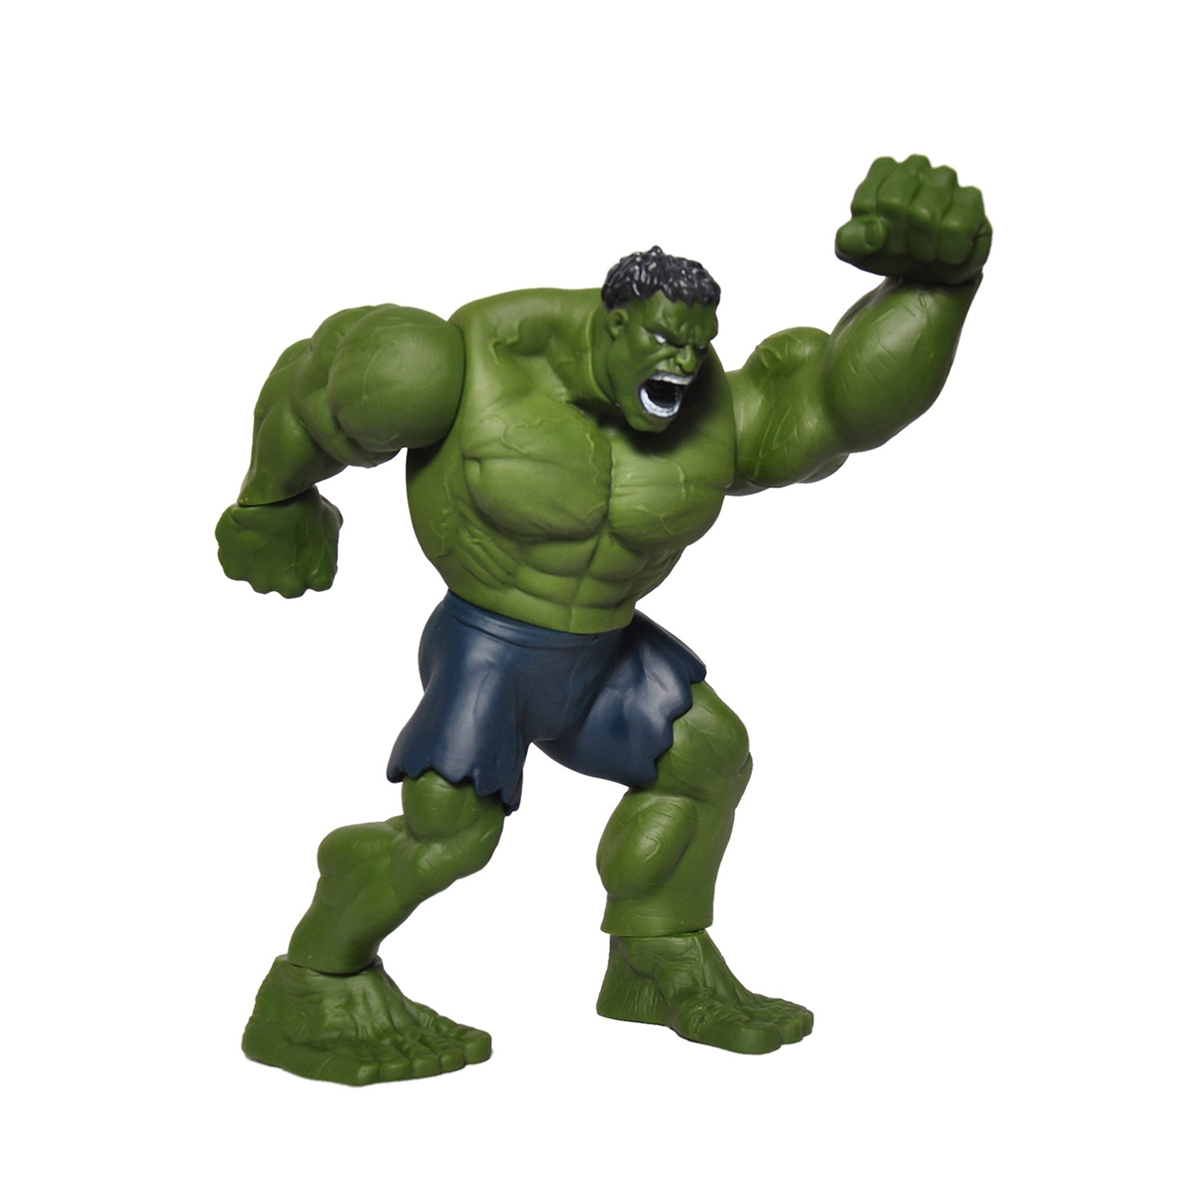 Incredible Hulk Sculpture